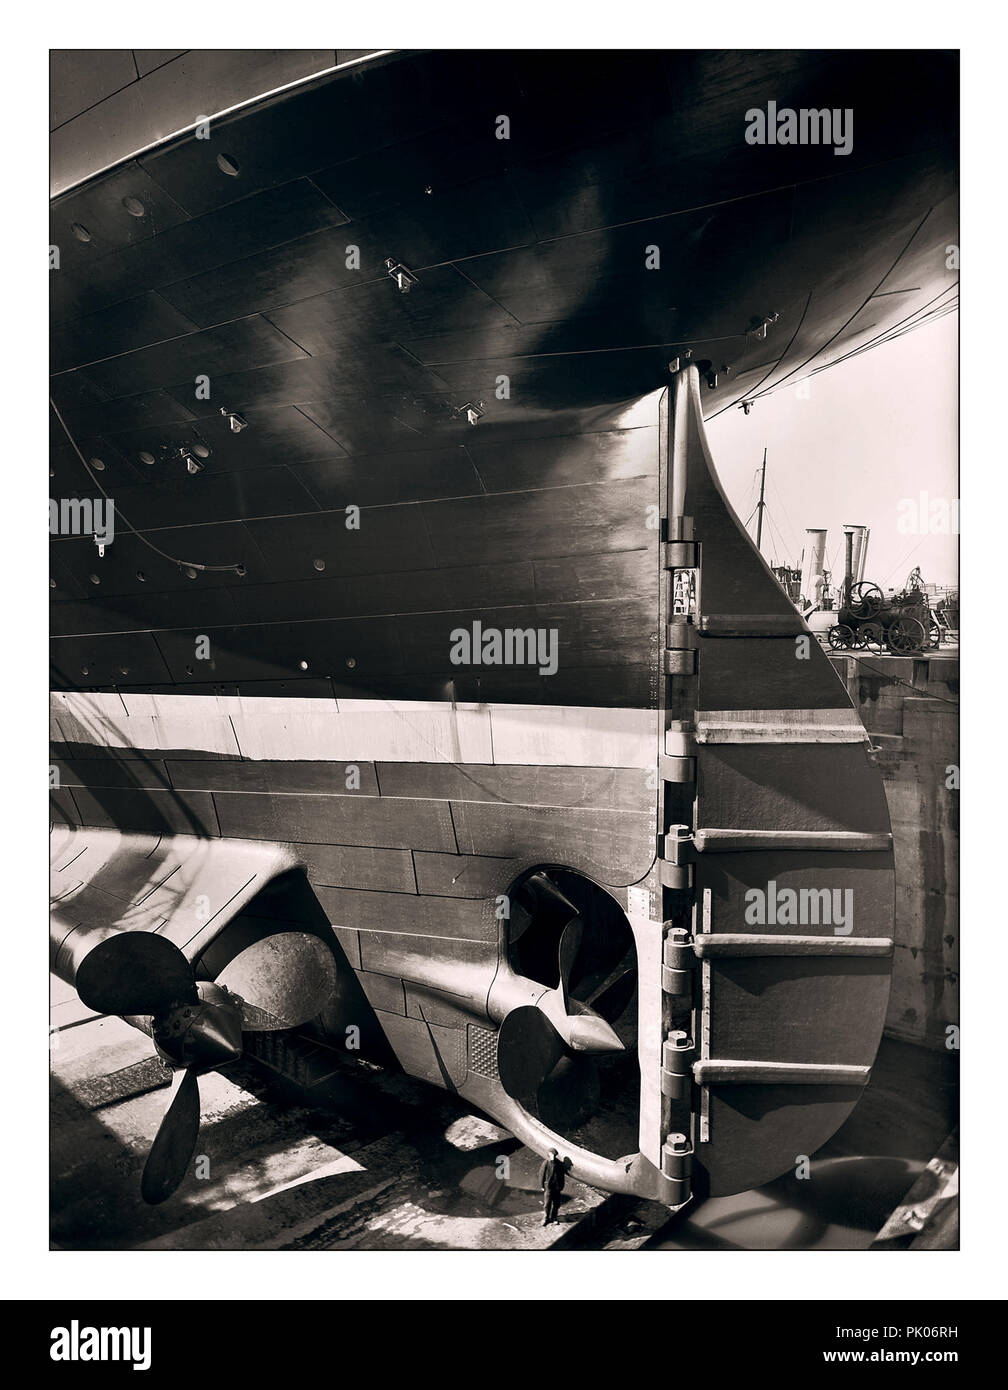 TITANIC STERN DIMENSIONI DI LAVORO COSTRUZIONE storico 1912 immagine di RMS Titanic timone e propellori con il lavoratore della nave nel grande cantiere di costruzione di bacino a secco che aggiunge scala al enorme Ocean Liner Harland e Wolff cantiere Belfast UK Foto Stock